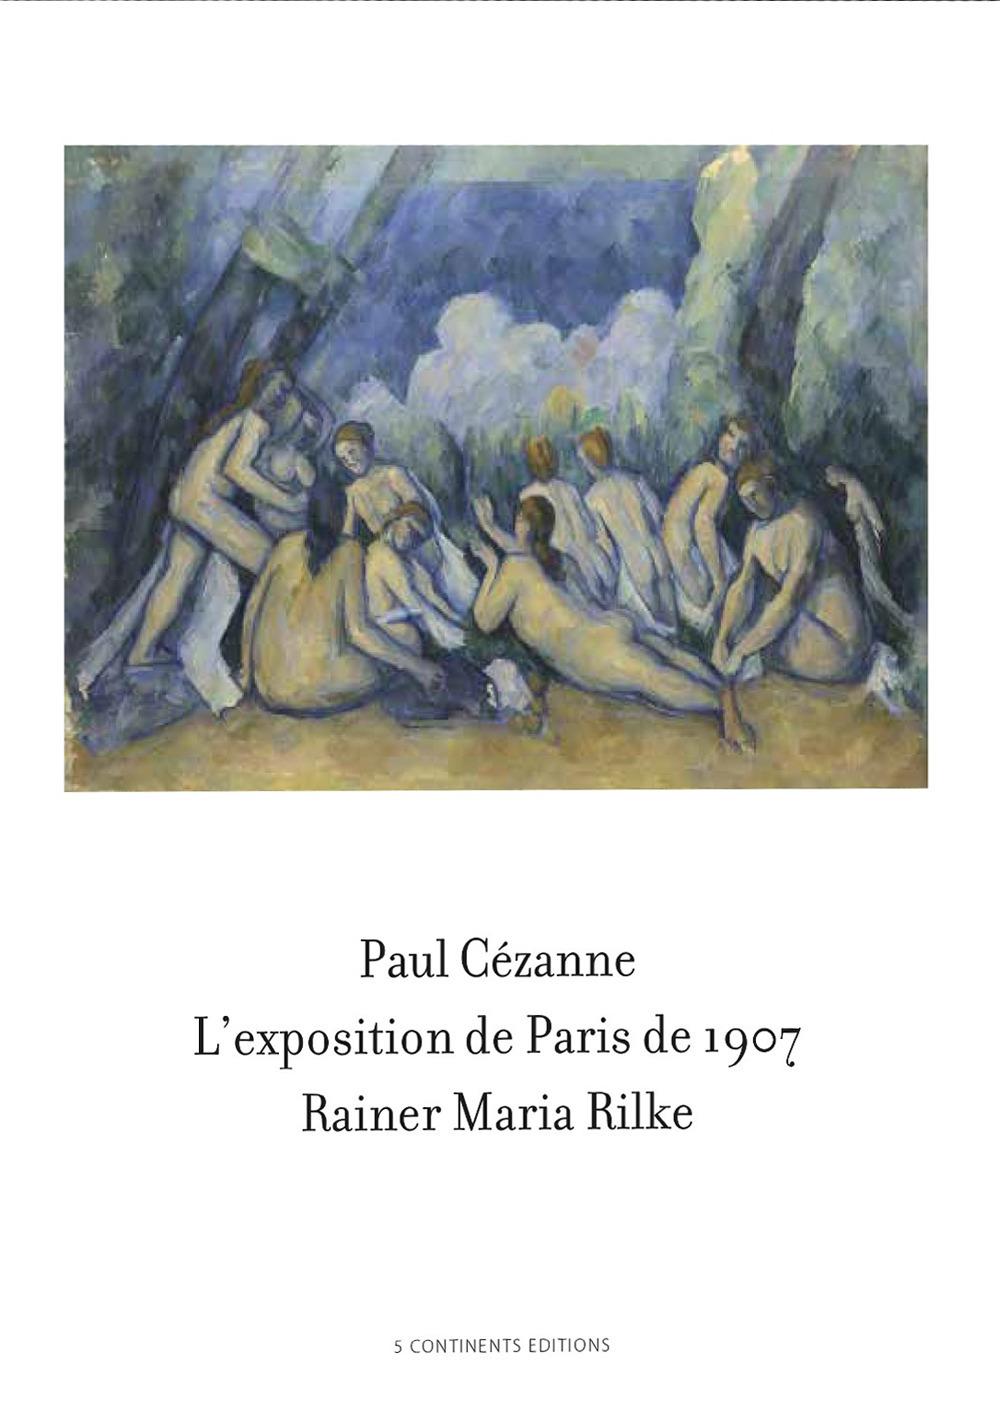 Paul Cézanne. L'exposition de Paris de 1907 visitée, admirée et décrite par Rainer Maria Rilke